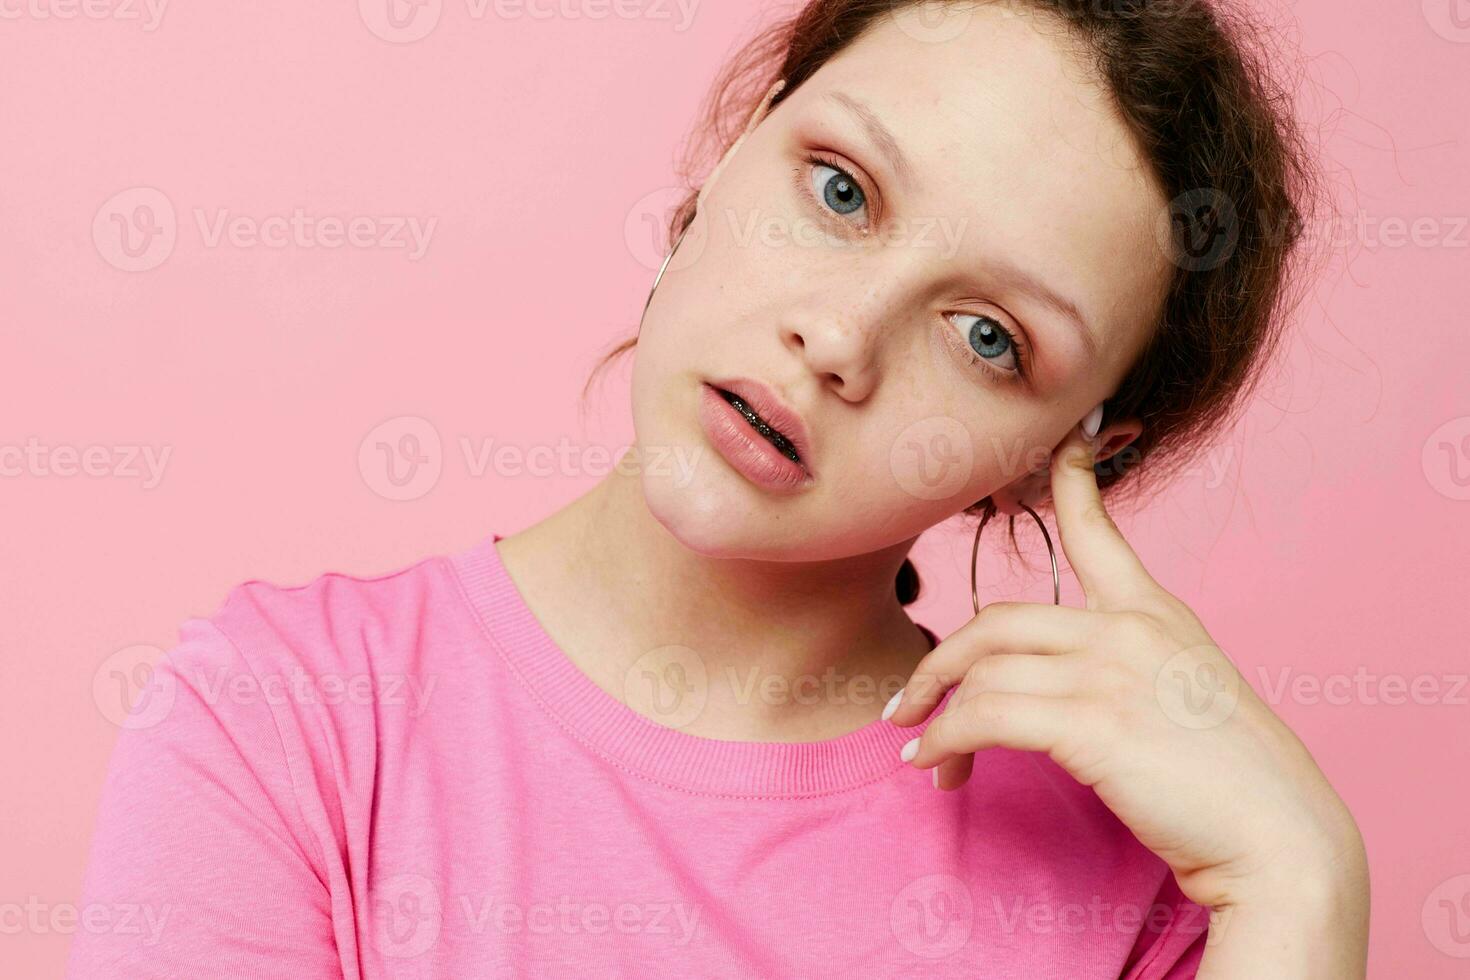 attrayant Jeune femme mode rose T-shirt décoration posant mode de vie inchangé photo